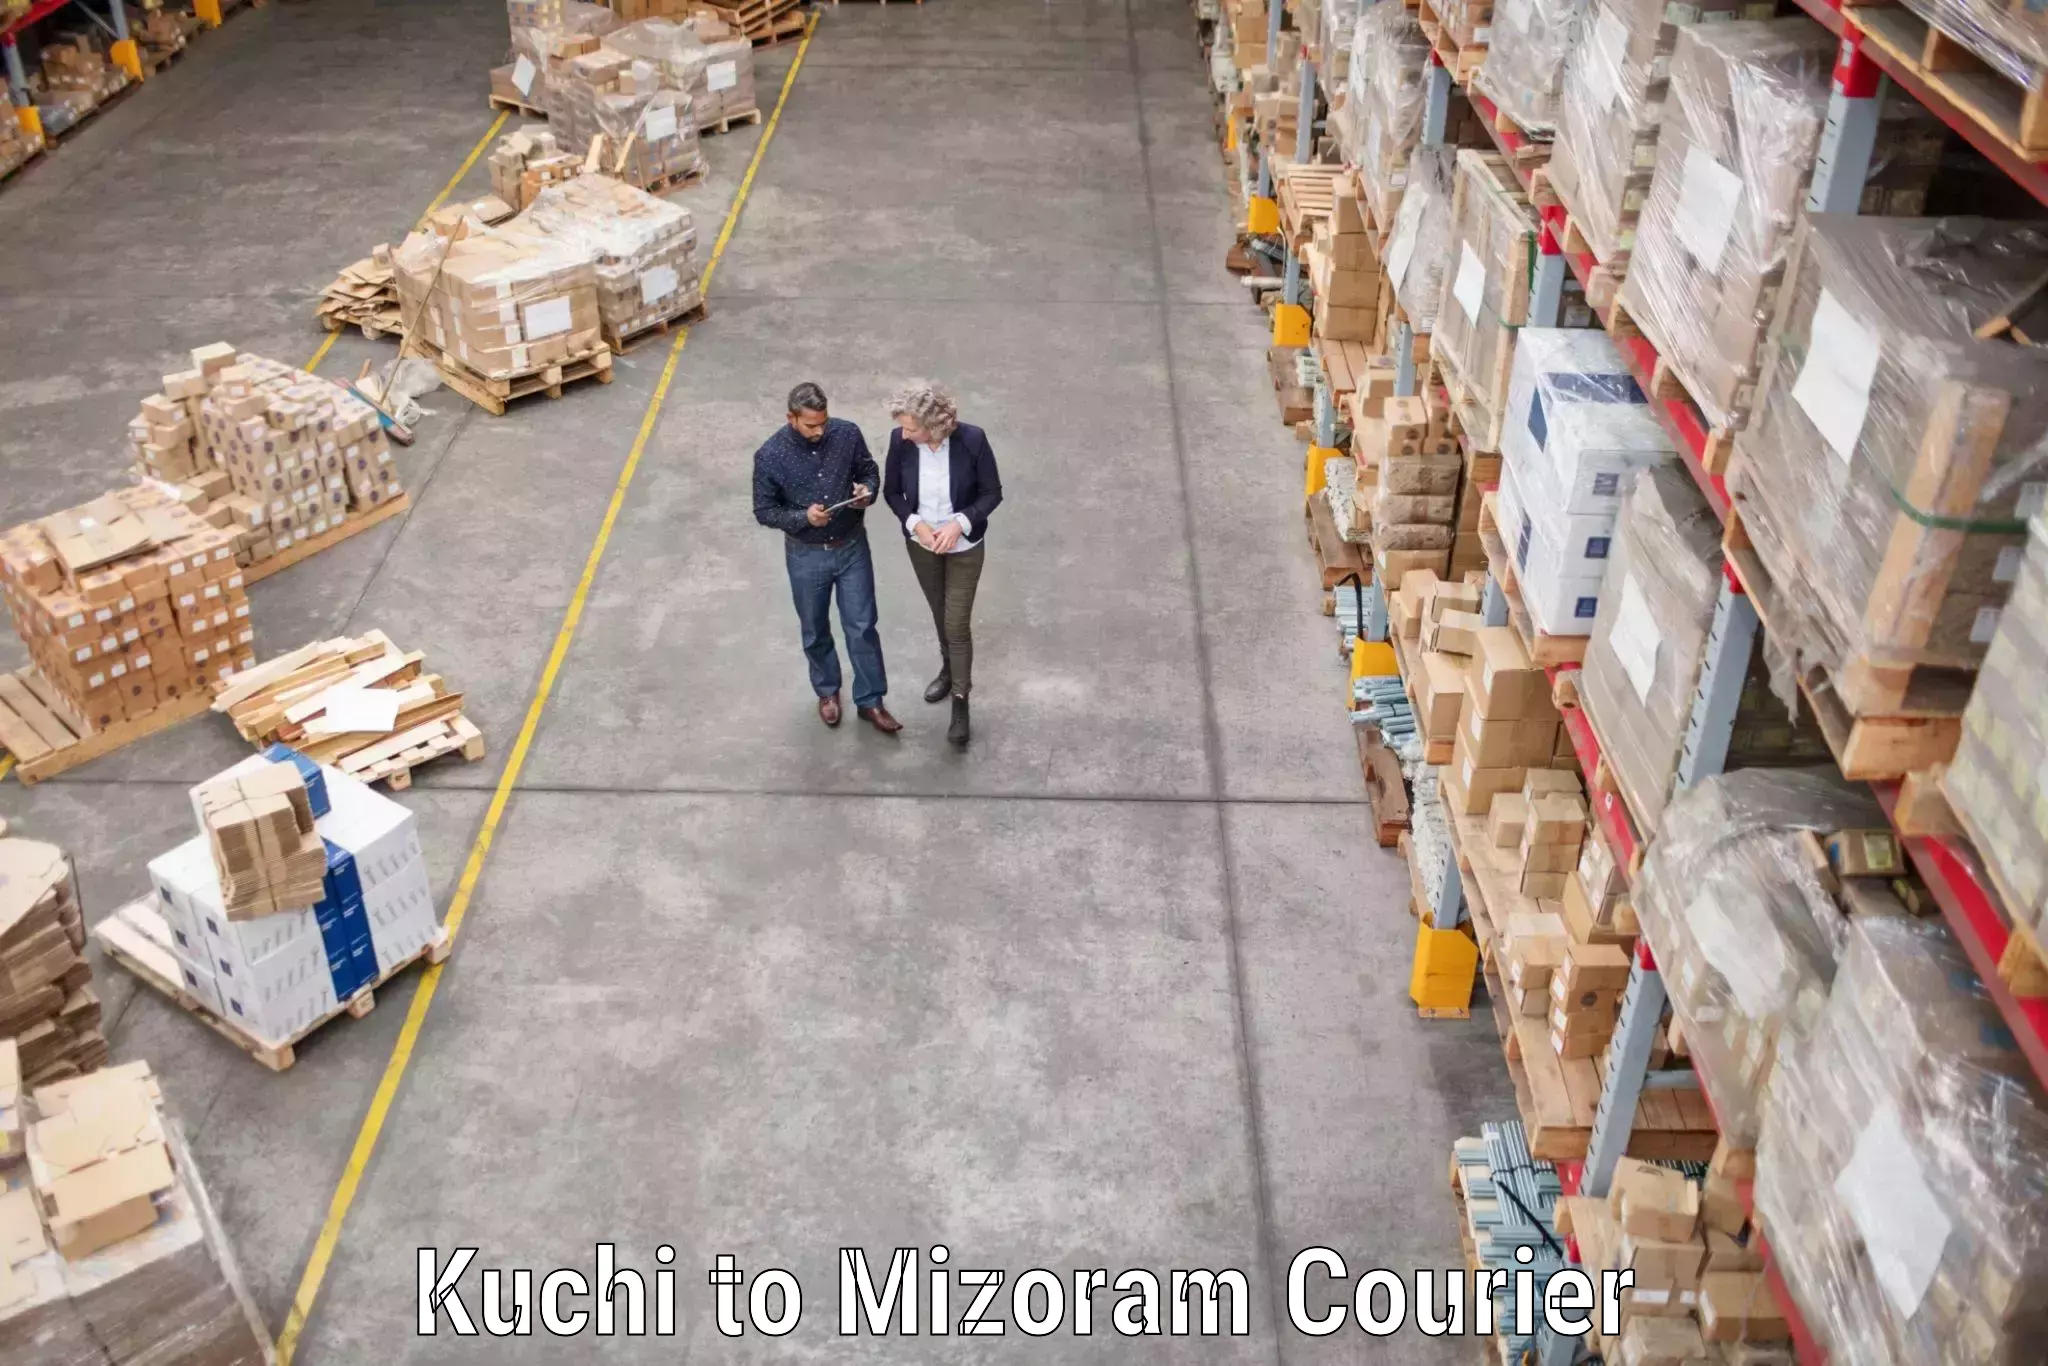 Professional goods transport Kuchi to Aizawl